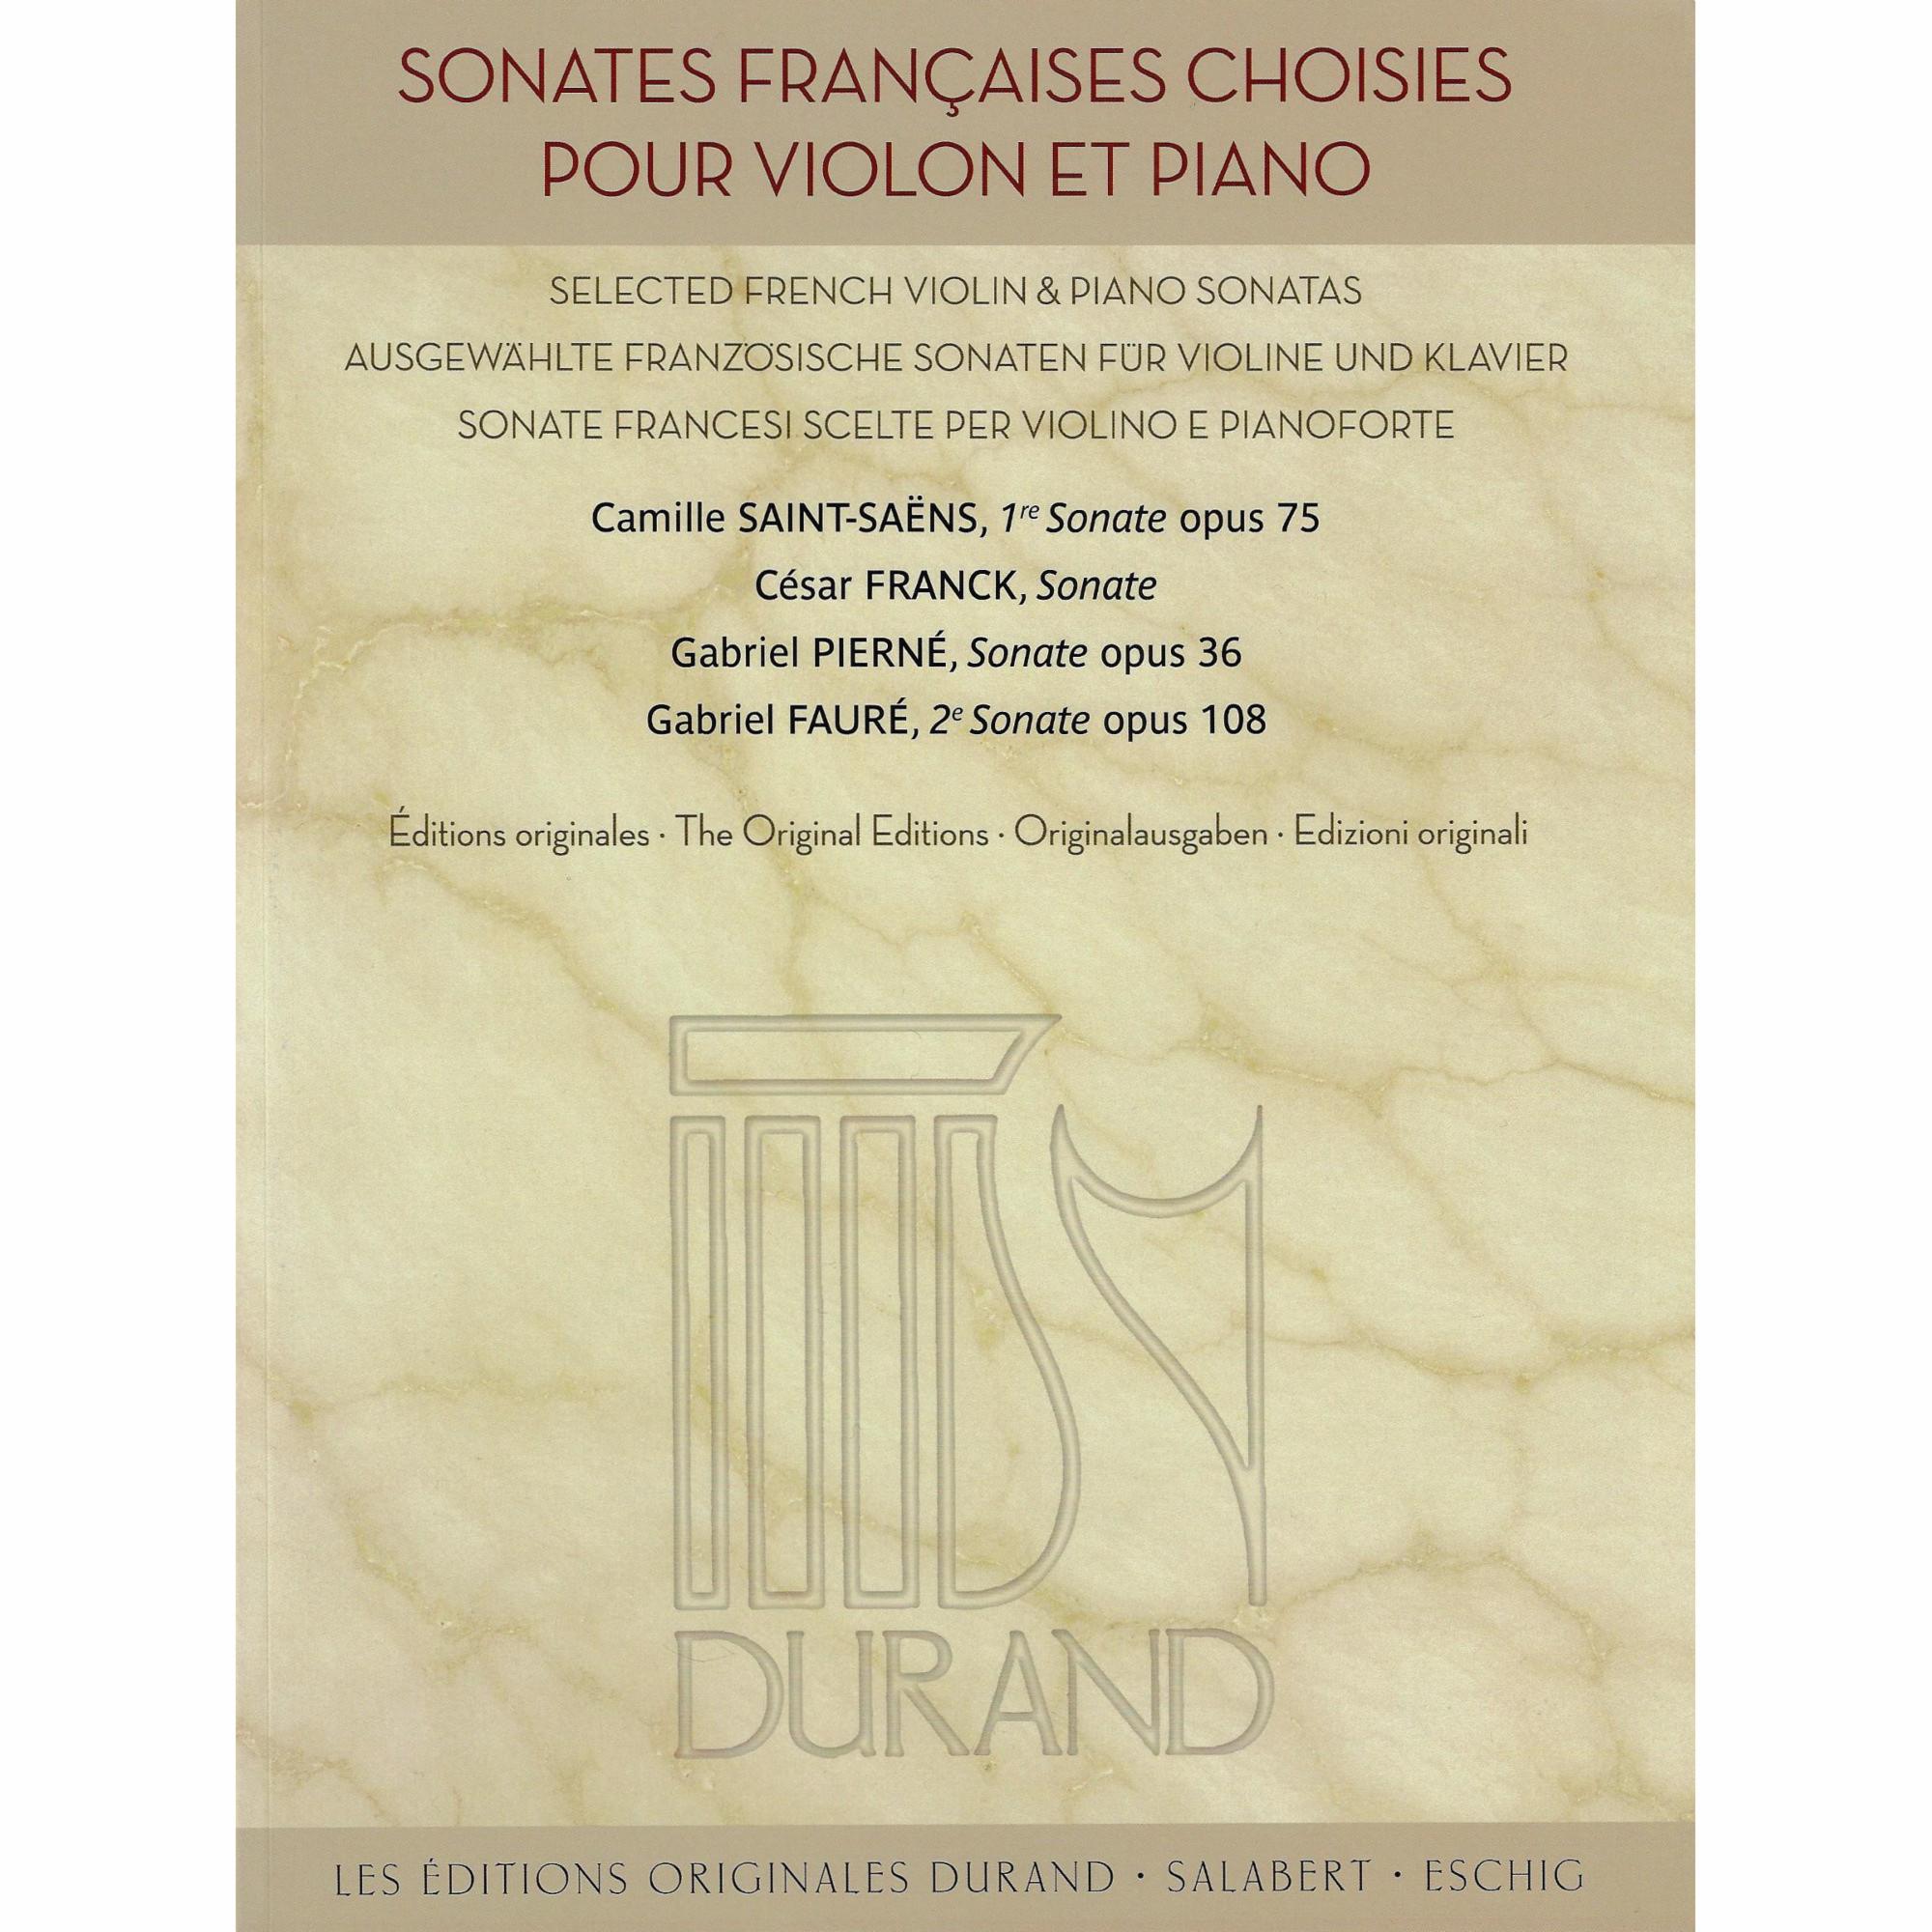 Select French Violin & Piano Sonatas